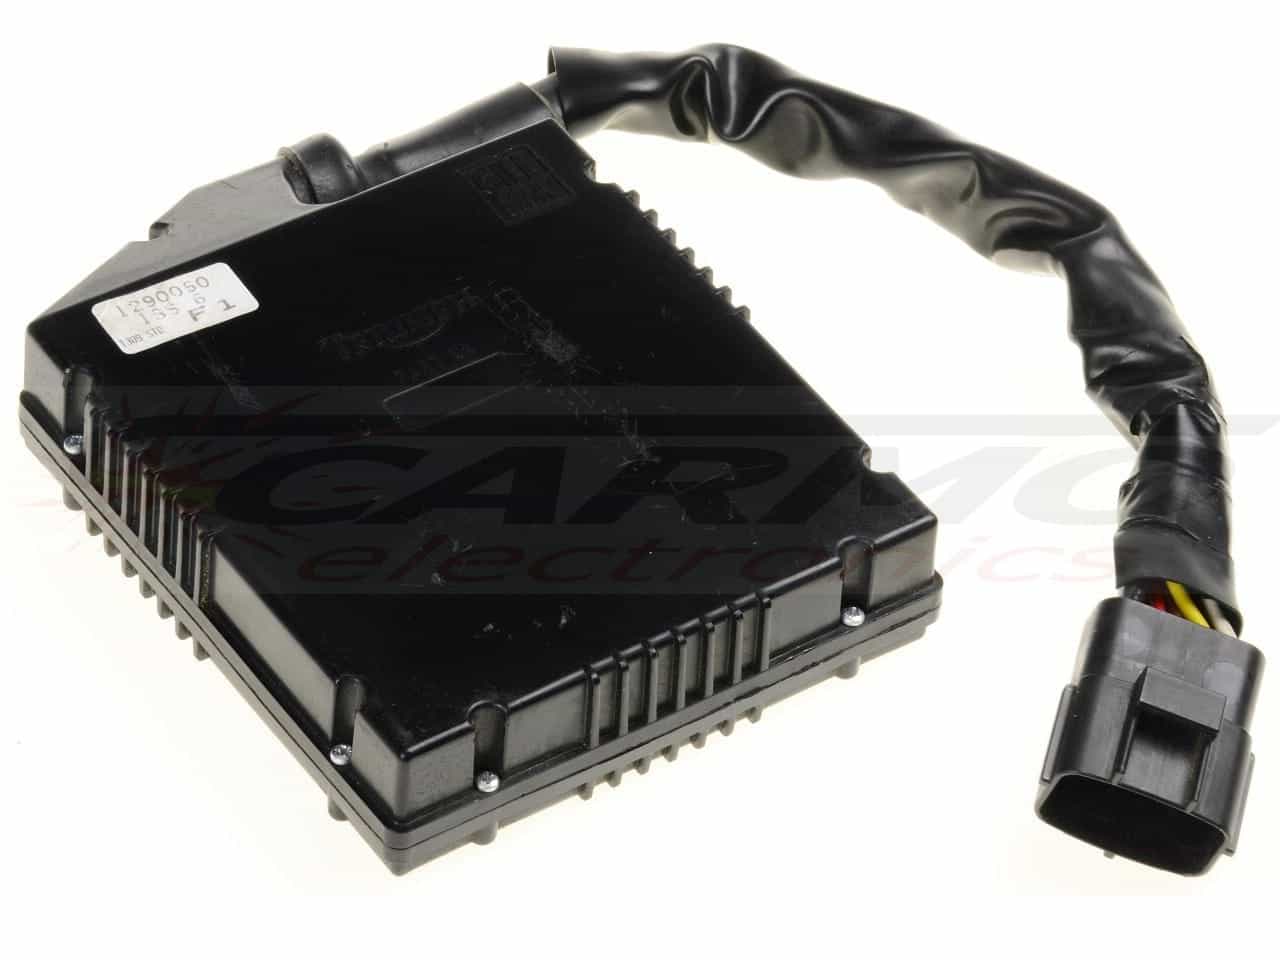 Trophy 900 TCI CDI dispositif de commande boîte noire (GILL 1290060, 1290063, 1290066)